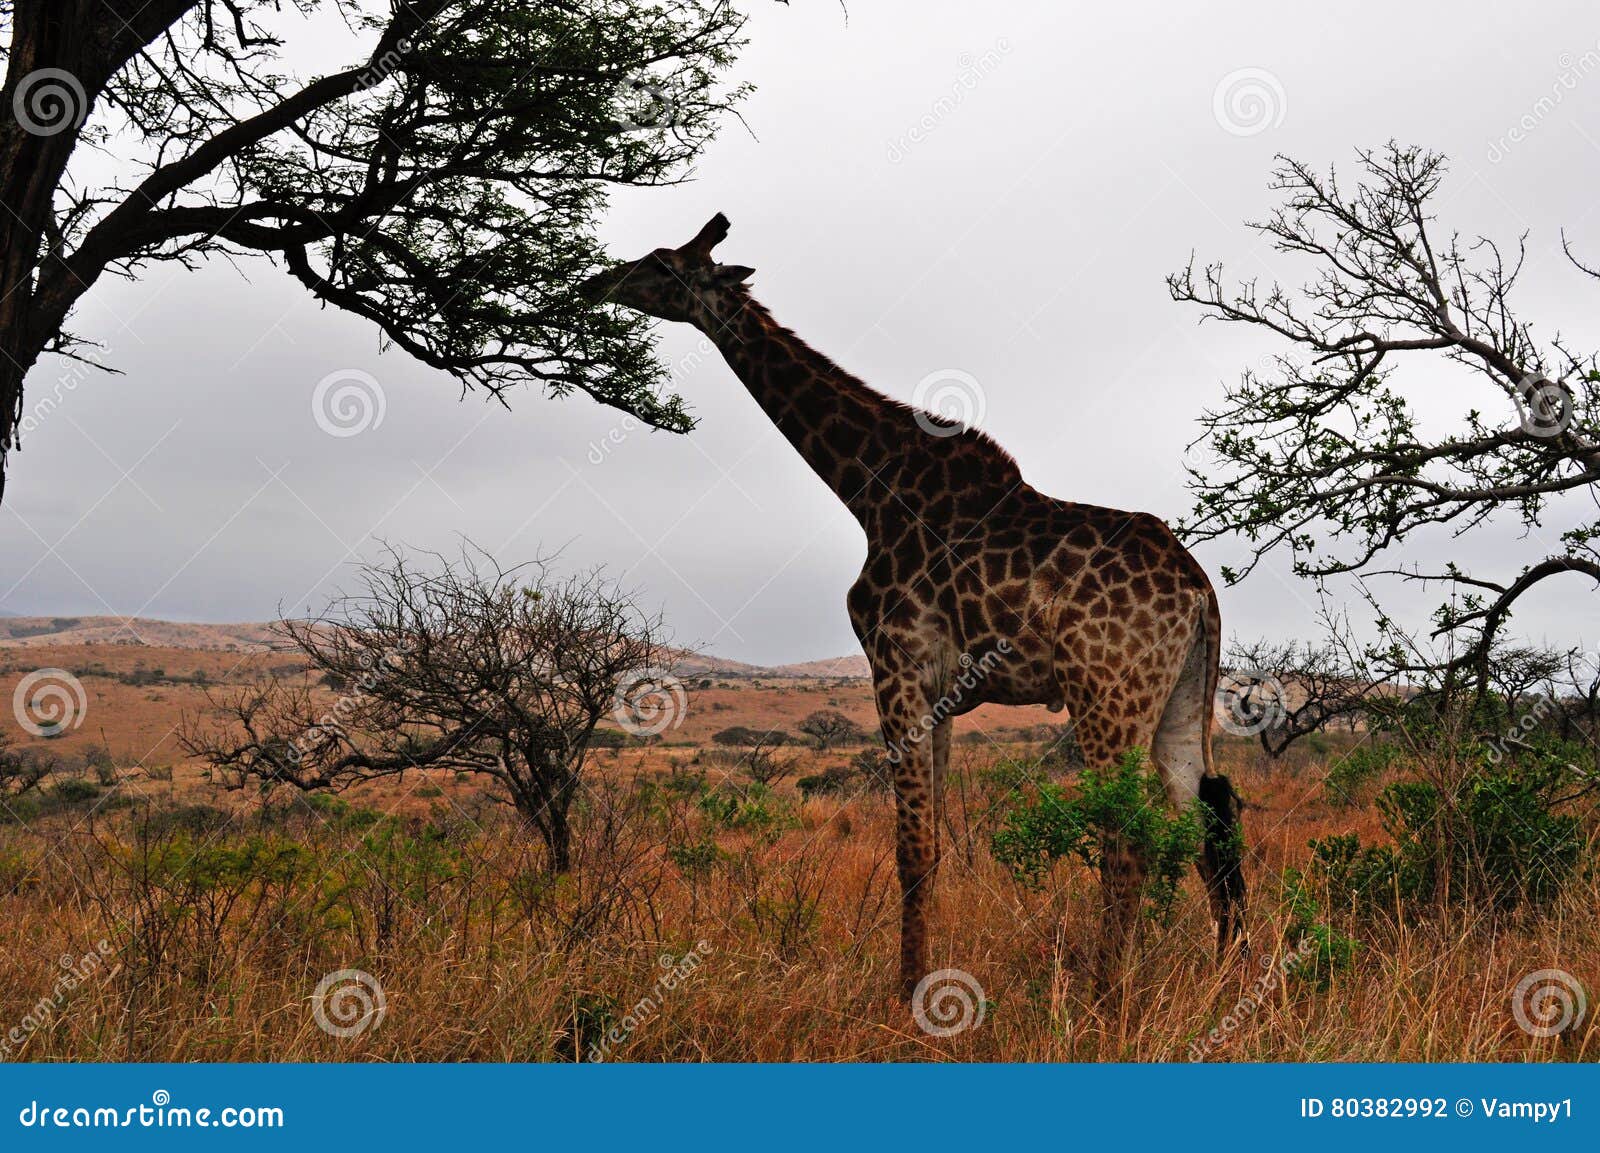 south africa, hluhluwe imfolozi game reserve, kwazulu-natal